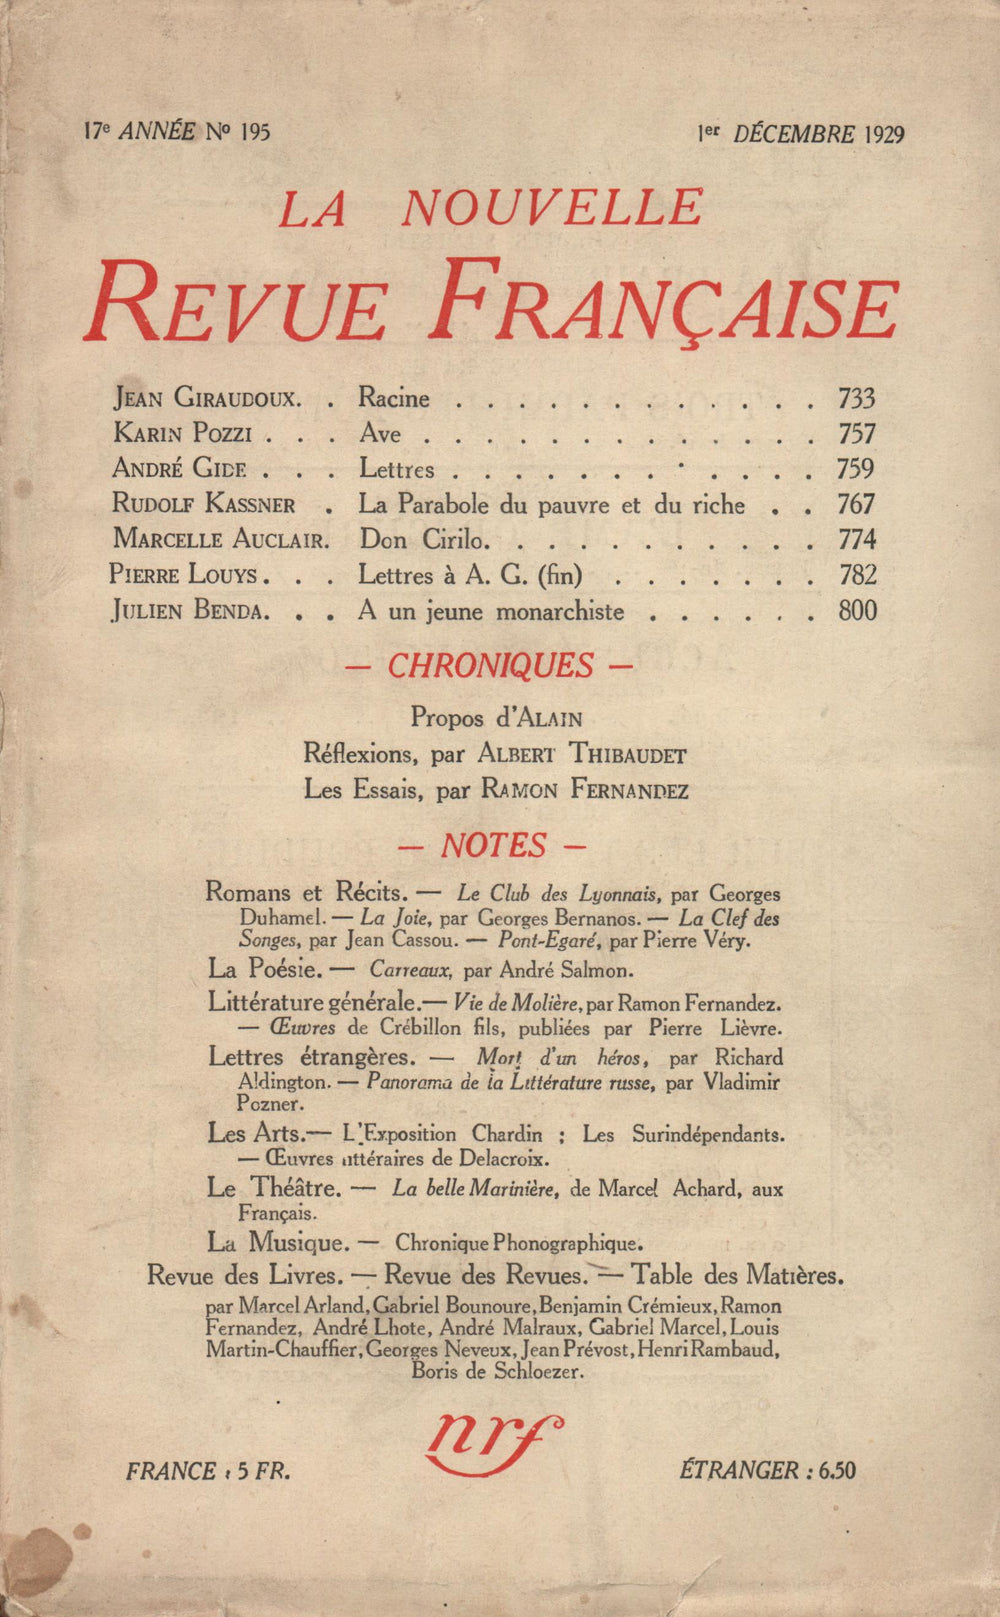 La Nouvelle Revue Française N' 195 (Décembre 1929)